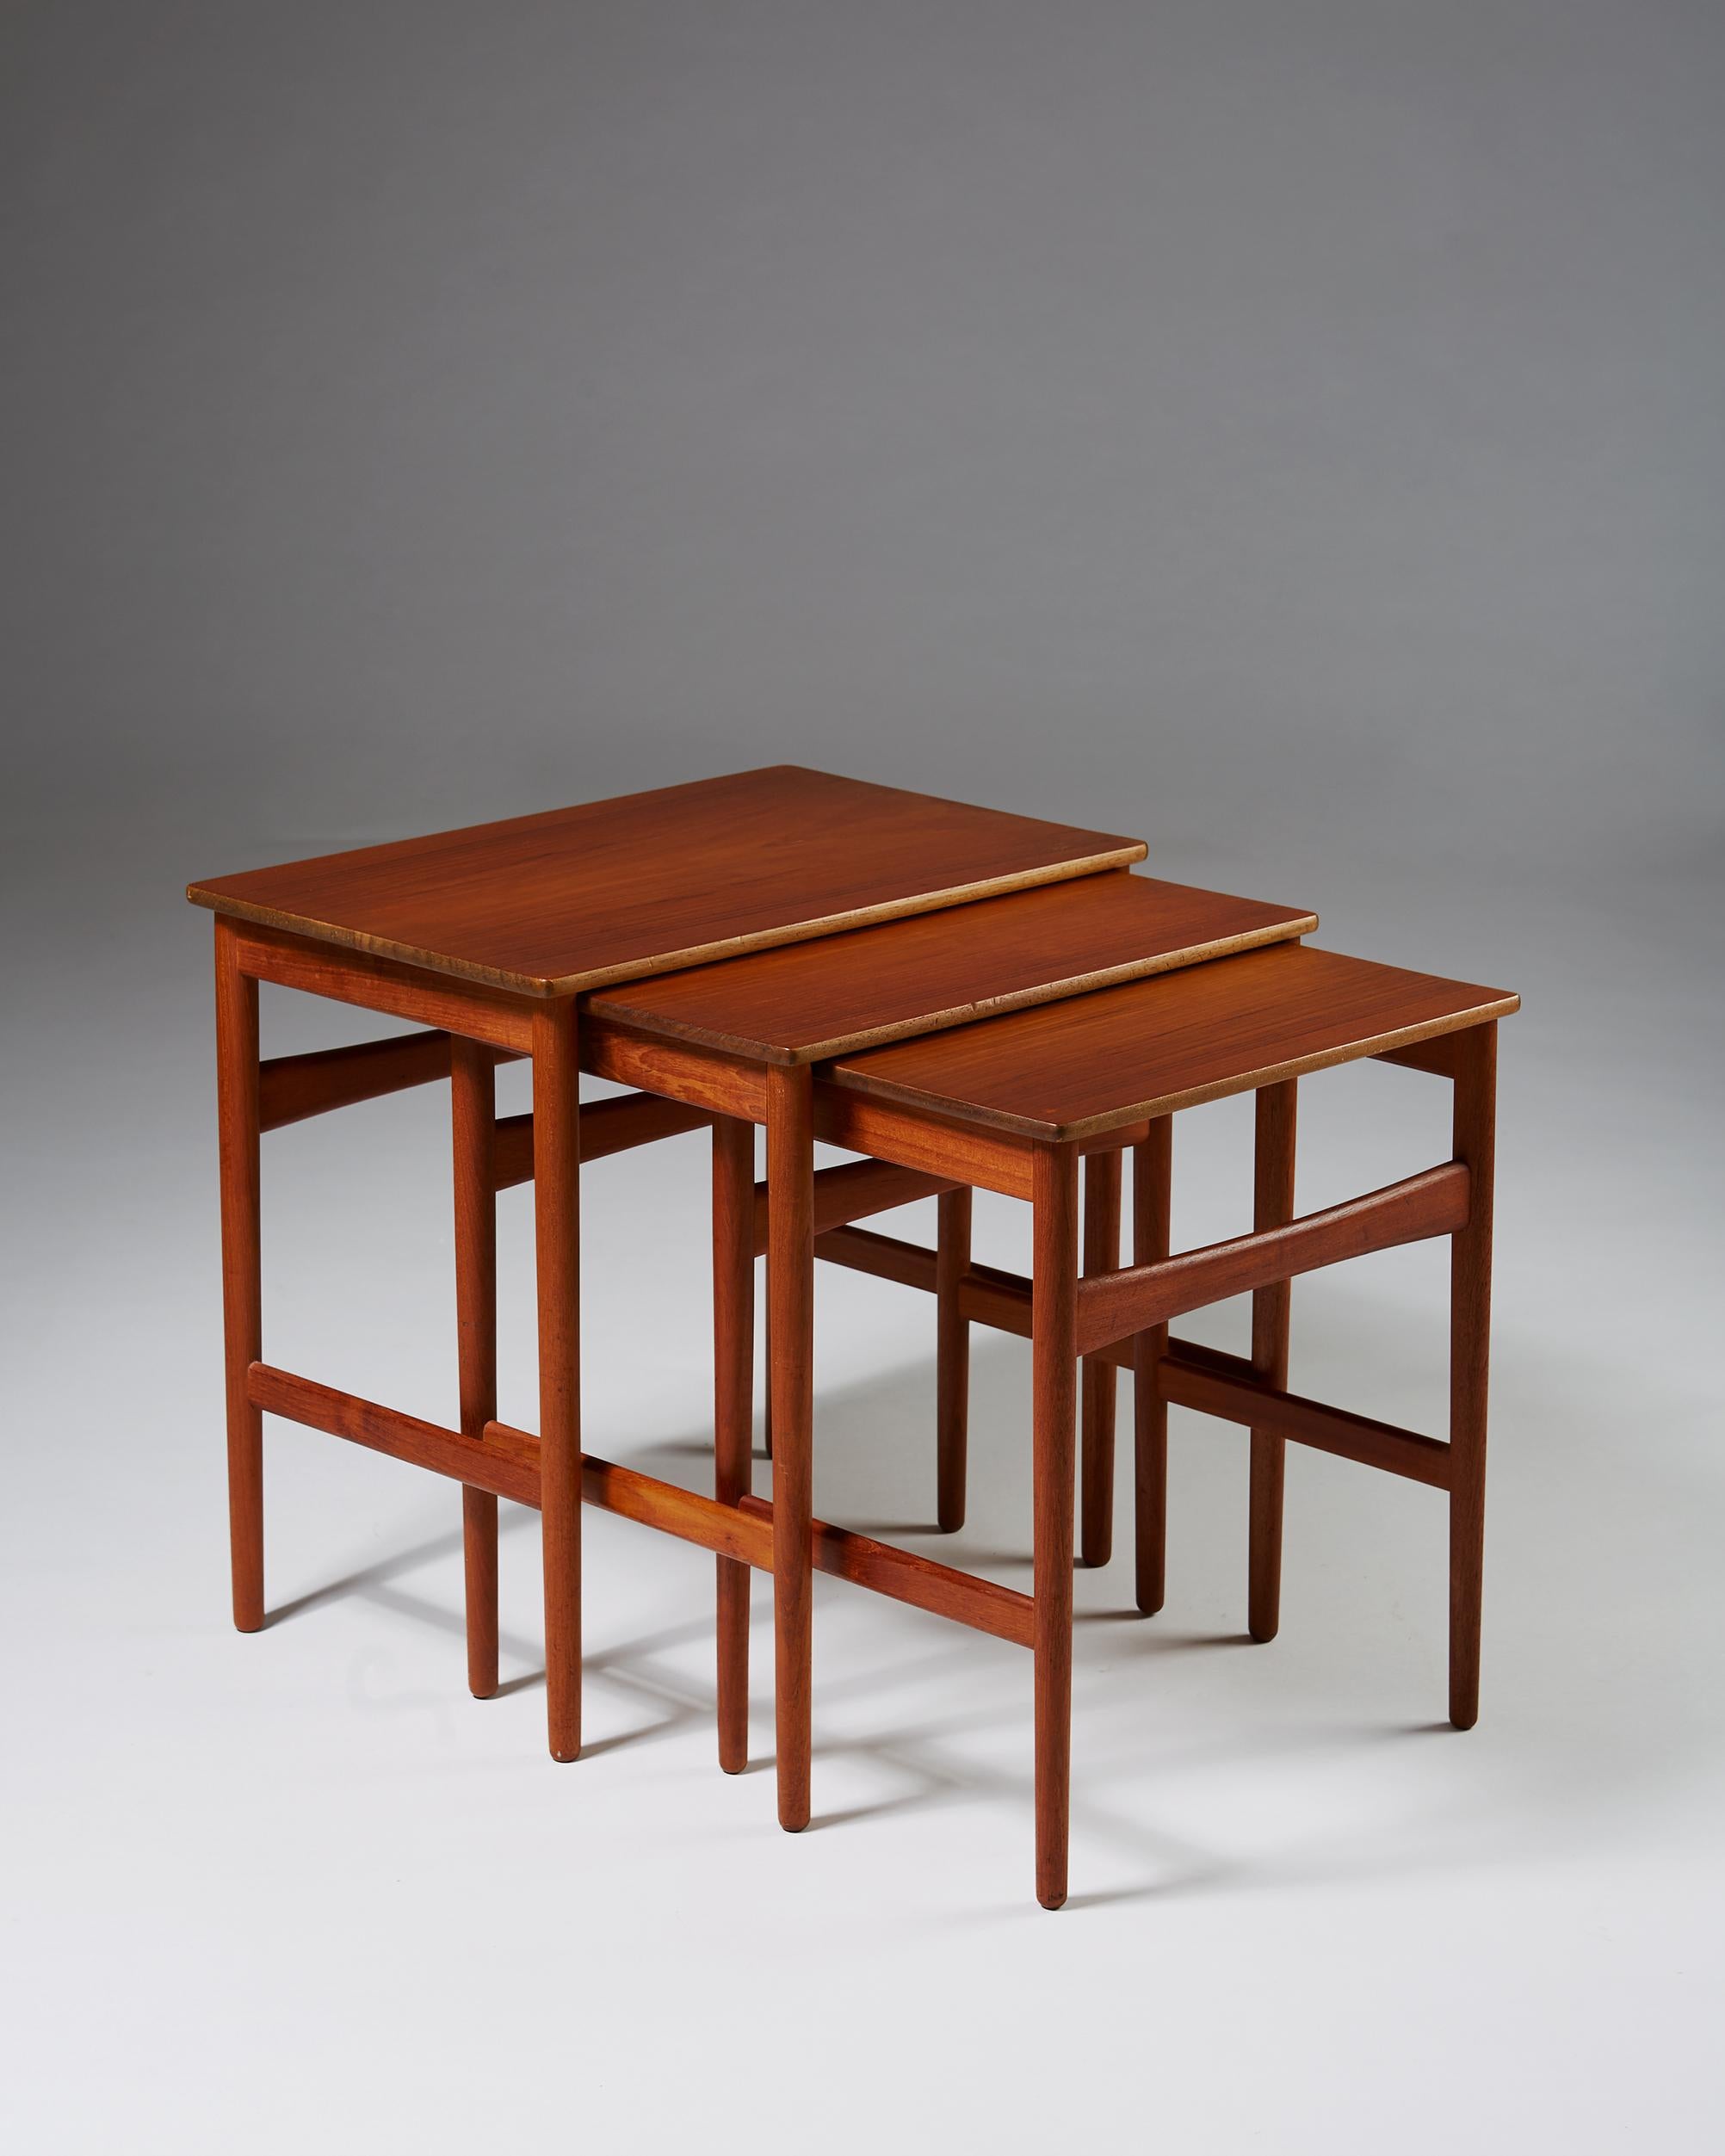 Nest of tables designed by Hans J. Wegner, 1950s. Solid teak.